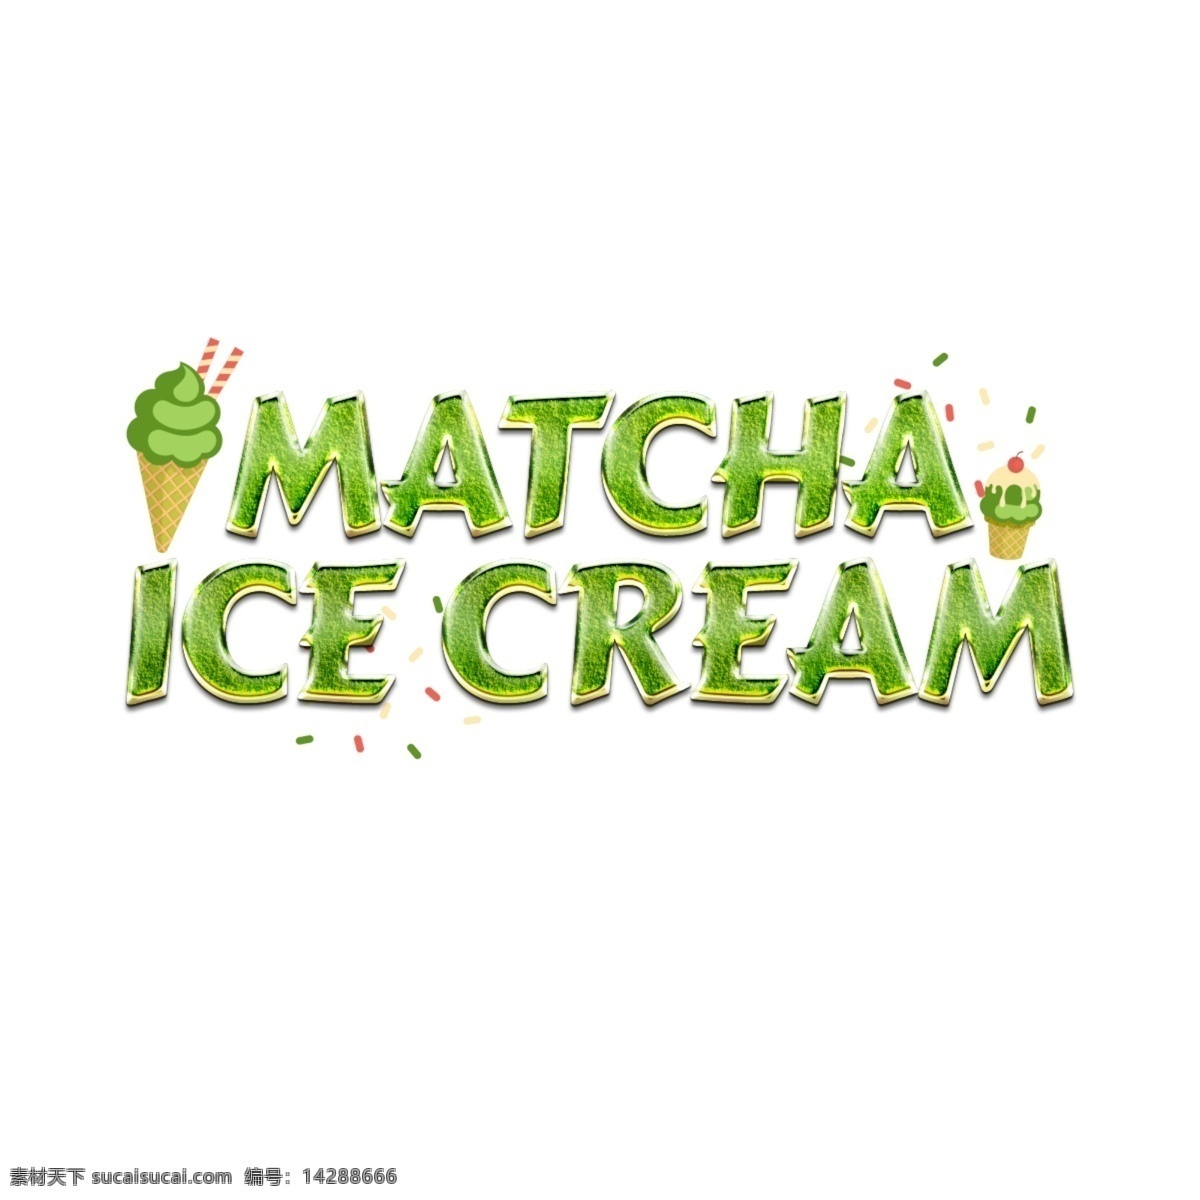 有趣 抹 茶 冰淇淋 字体 抹茶冰淇淋 绿色 抹茶 动画片 樱桃 简单的字体 画画 书法